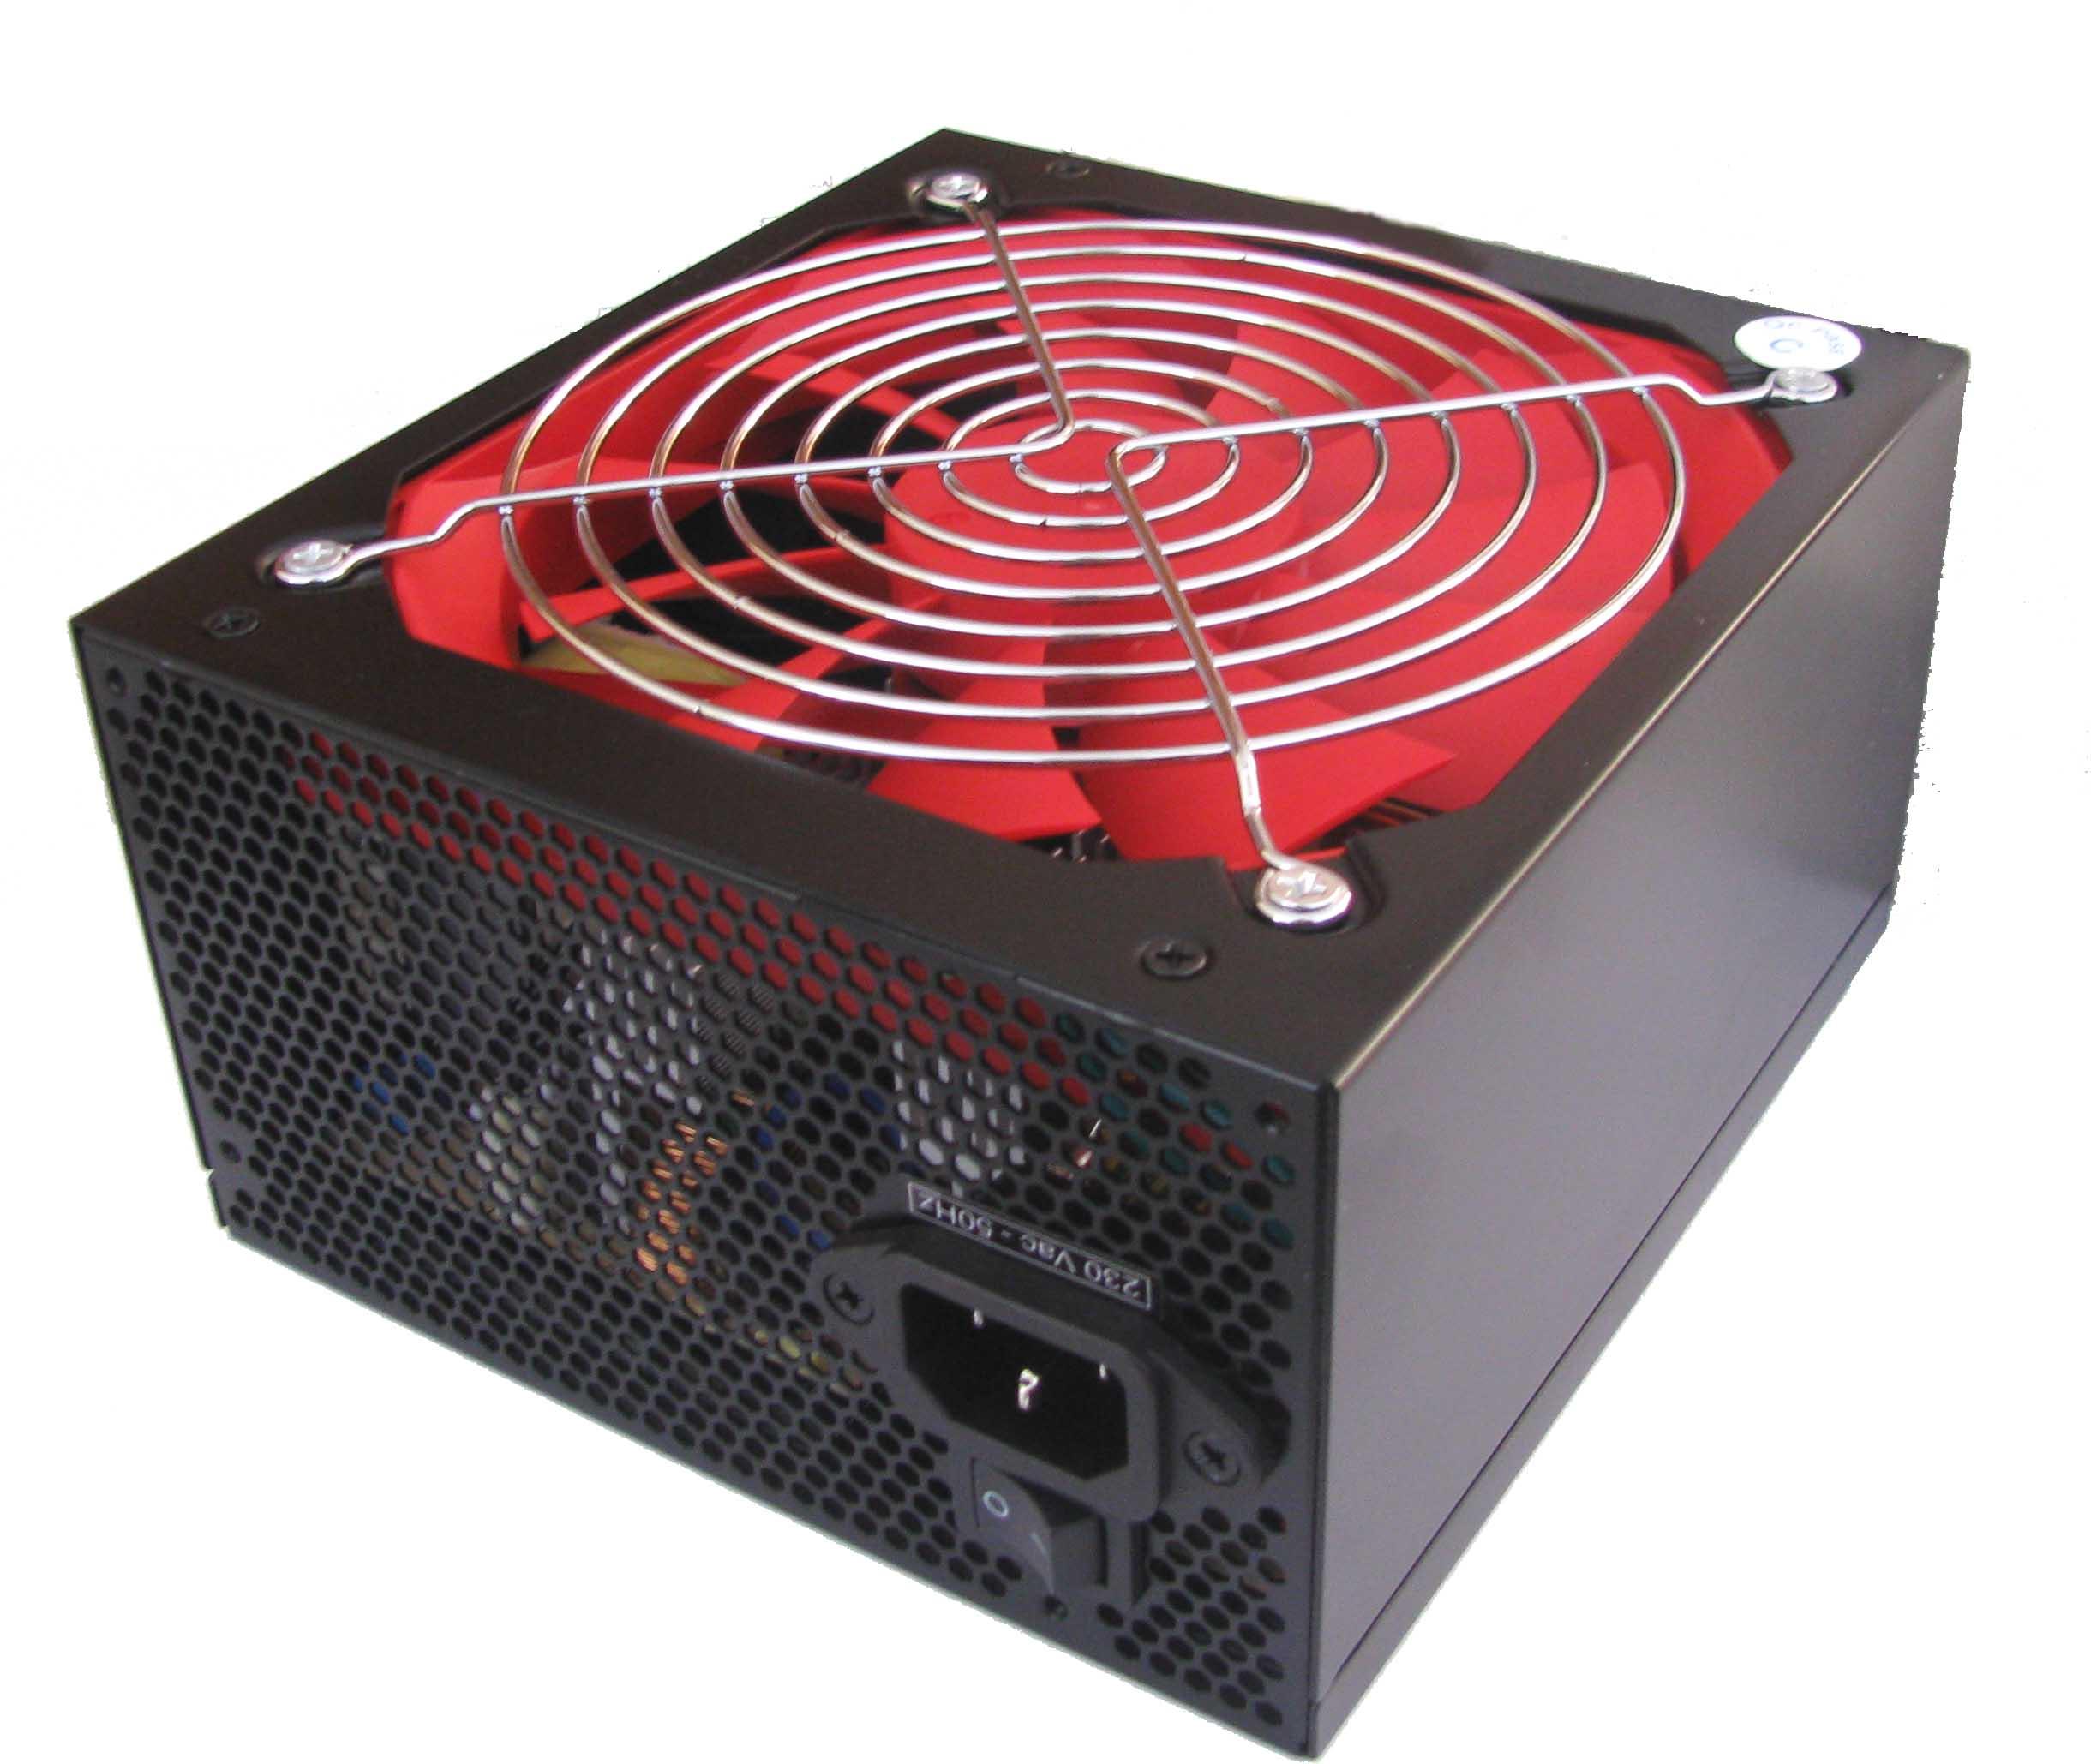 Τροφοδοτικό Υπολογστή 700w 14" Xpower ATX PFC ACT. Black Redwind 54049